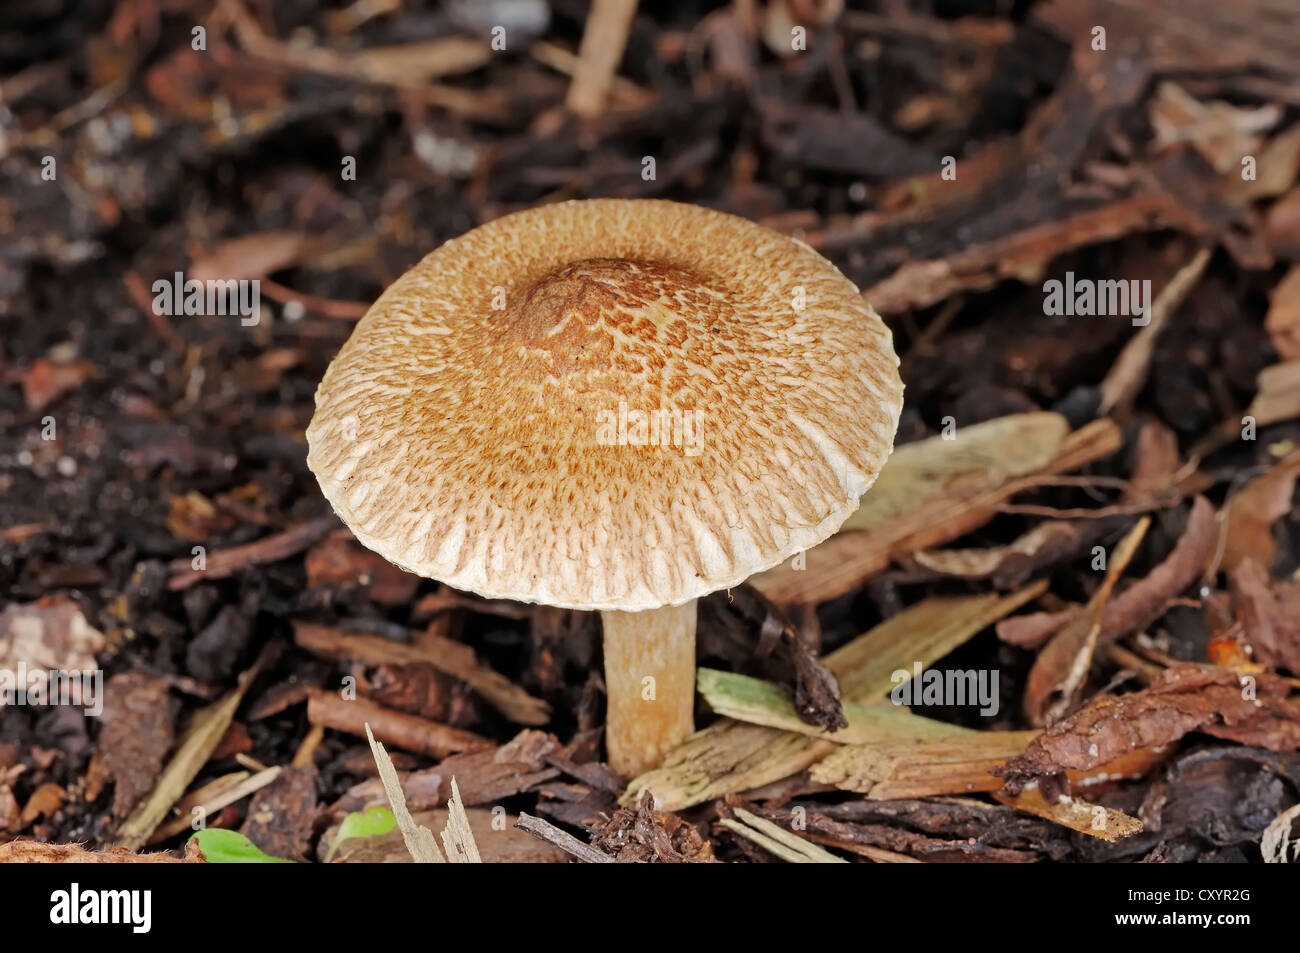 Parasol Mushroom or Gilled Mushroom (Lepiota fulvella), North Rhine-Westphalia Stock Photo